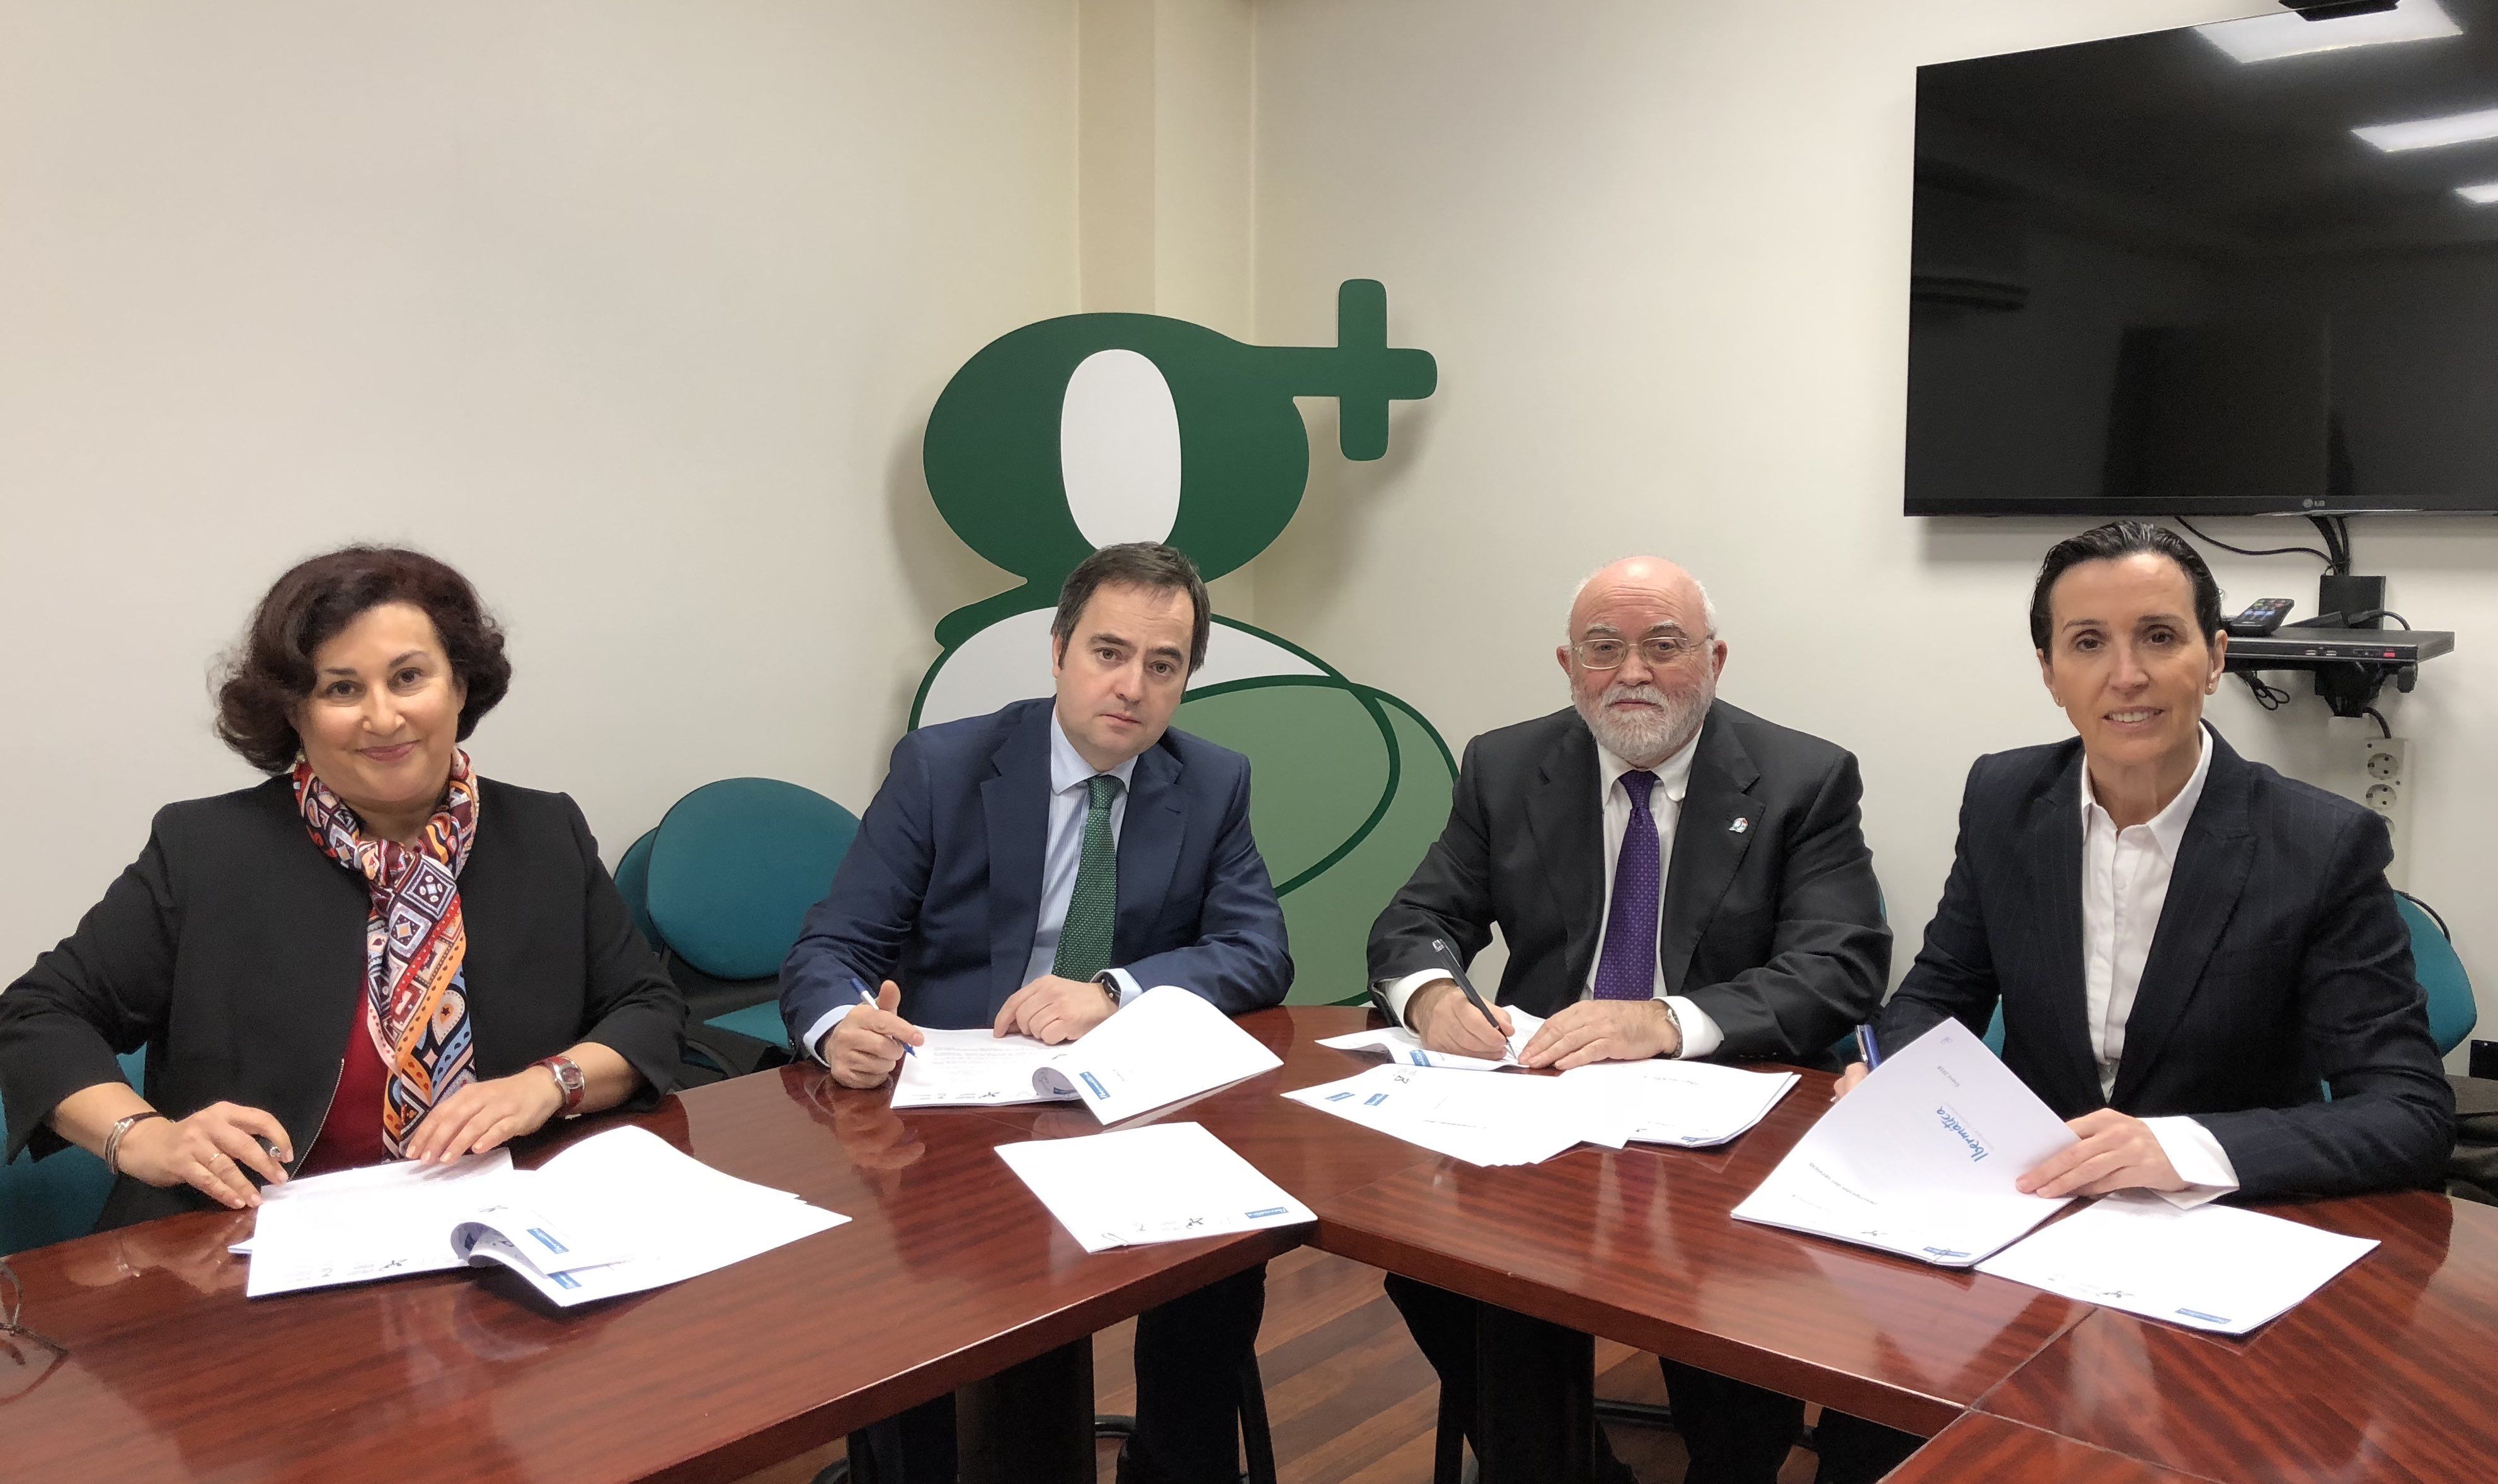 Los Colegios de Farmacéuticos del País Vasco renuevan con Ibermática el soporte al sistema ‘e-Rezeta’